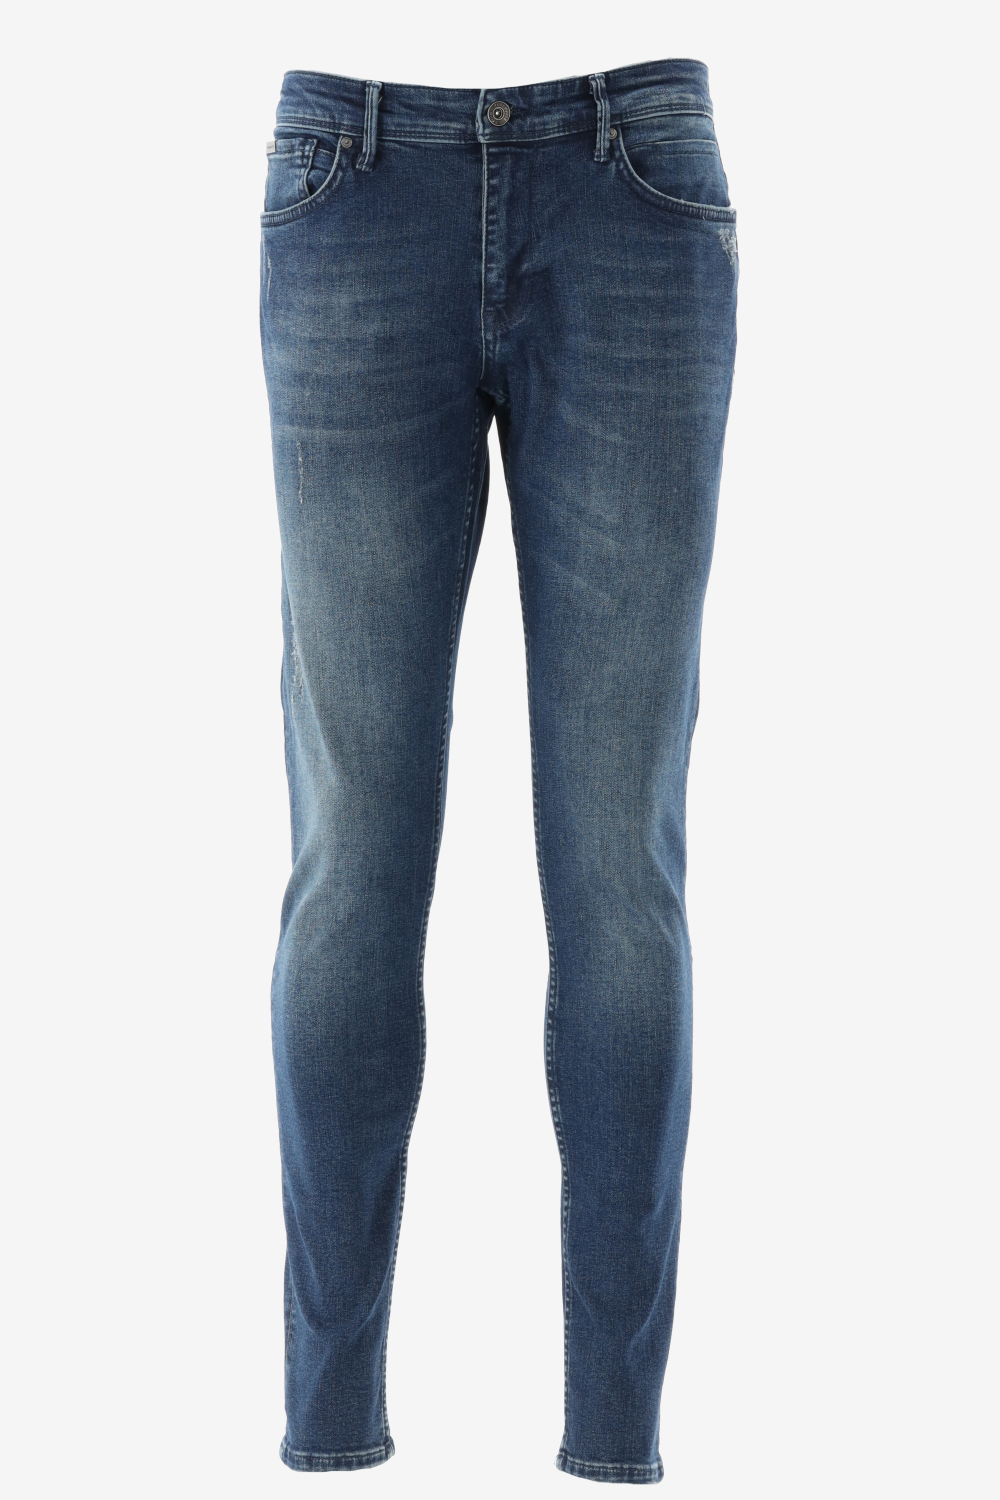 Purewhite - Jone Skinny Fit Heren Skinny Fit   Jeans  - Blauw - Maat 27